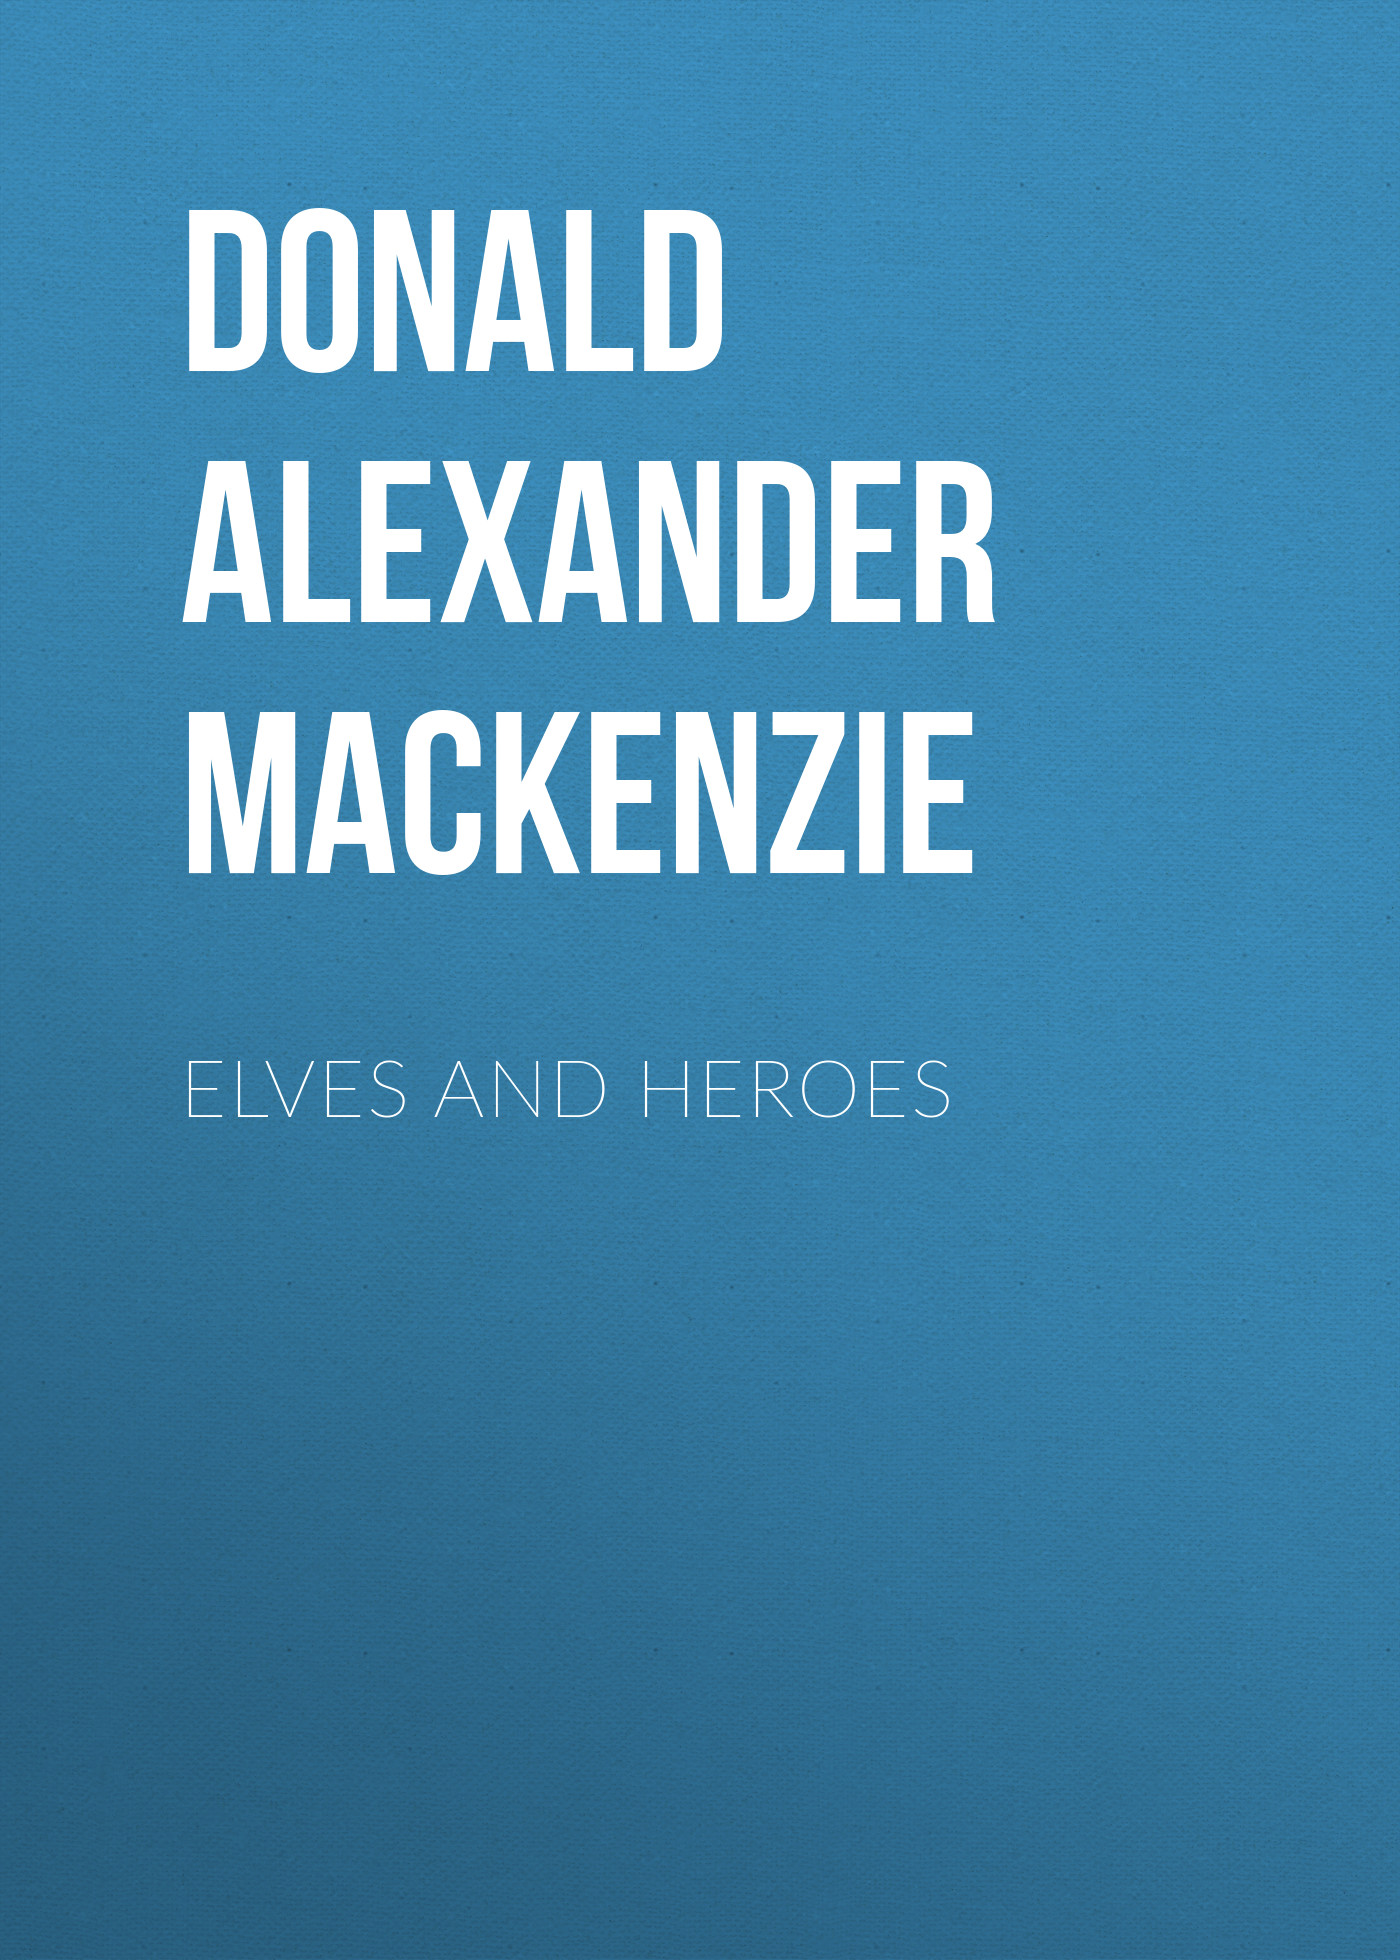 Книга Elves and Heroes из серии , созданная Donald Alexander Mackenzie, может относится к жанру Зарубежные стихи, Поэзия, Зарубежная старинная литература, Зарубежная классика. Стоимость электронной книги Elves and Heroes с идентификатором 35008273 составляет 0 руб.